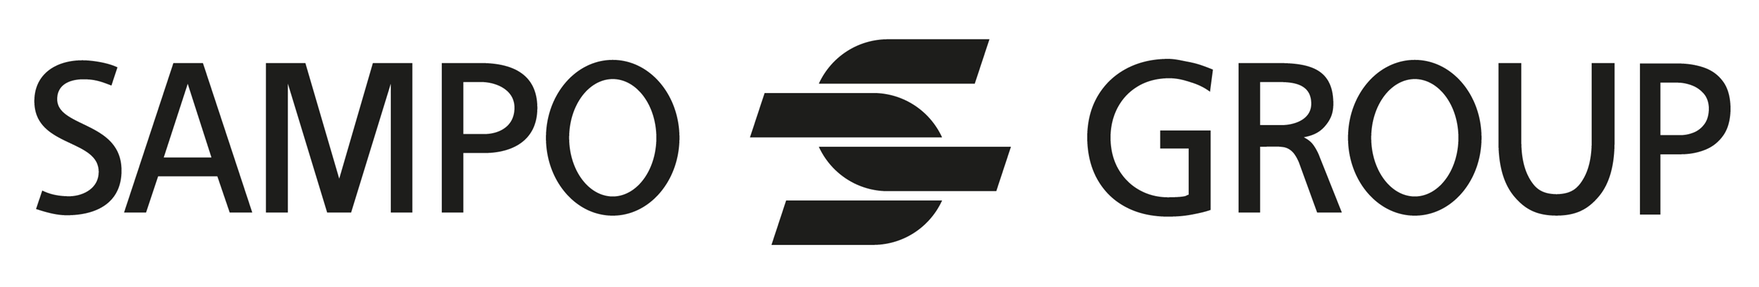 sampogroup-logo.png